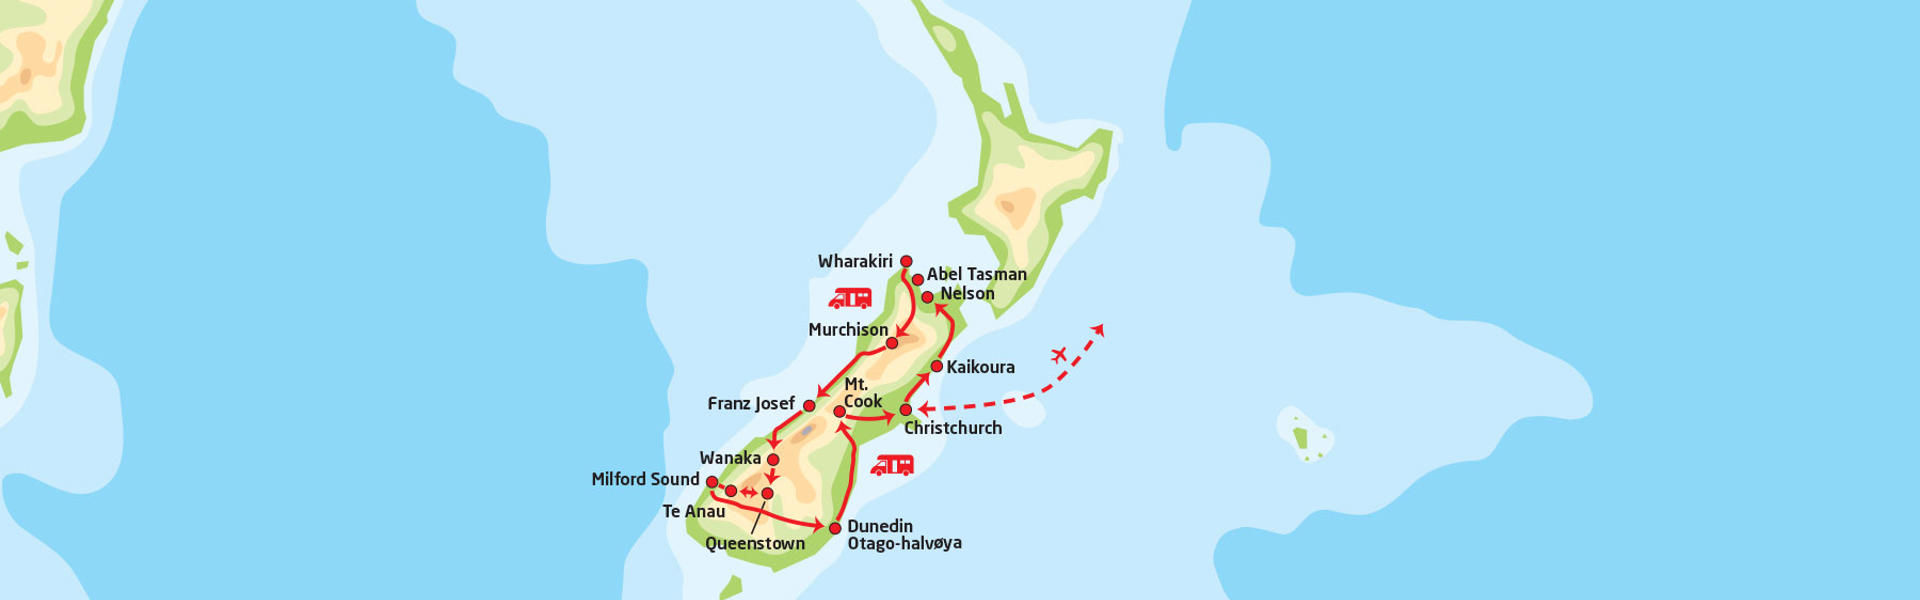 Sørøya på New Zealand i bobil | Reiserute